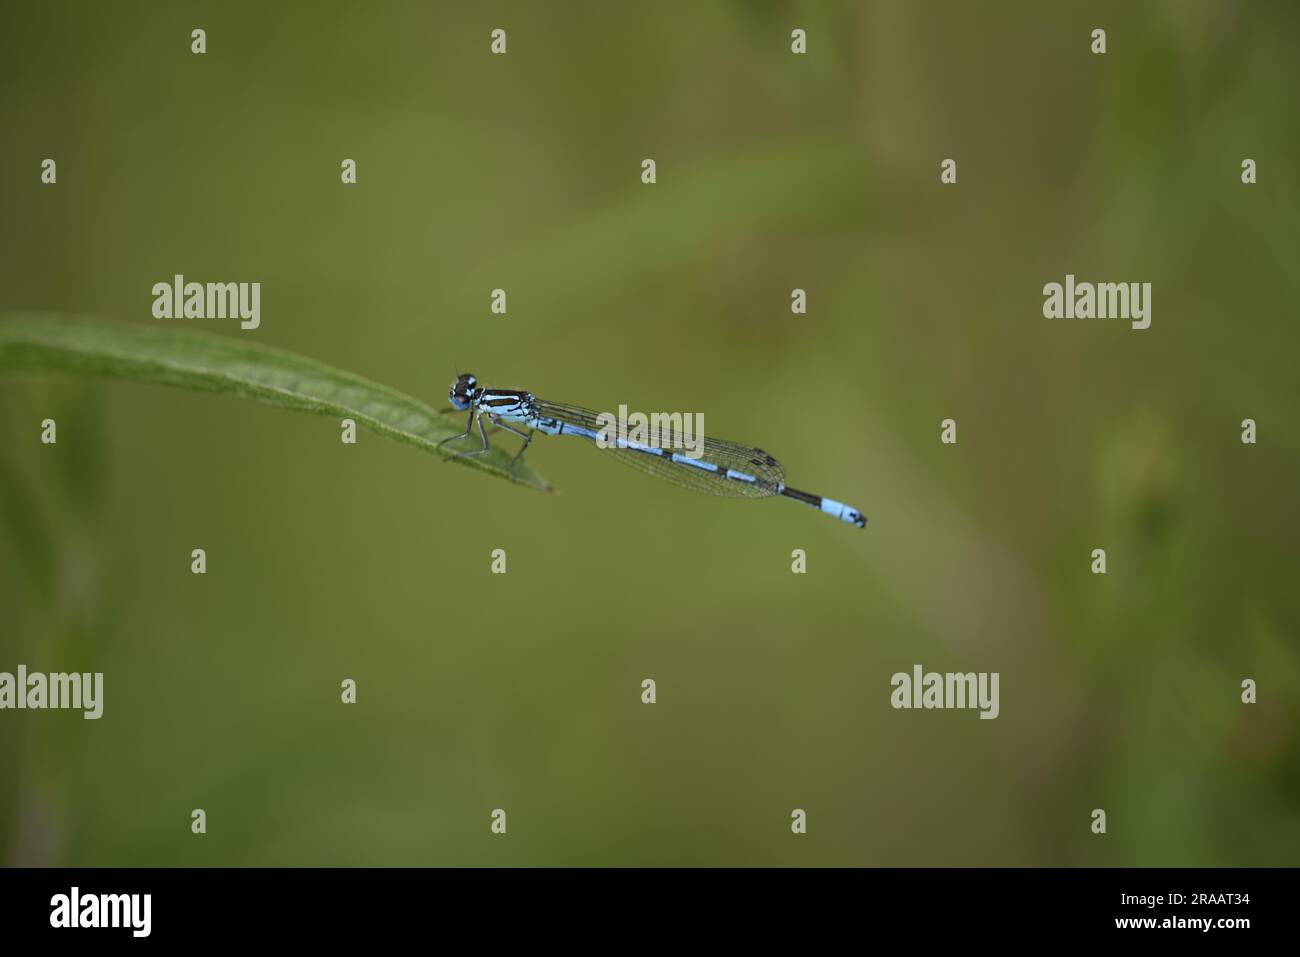 Immagine macro di Damselfly azzurro maschio (Caenagrion puella) arroccato nel profilo sinistro sul bordo di uno stelo d'erba a sinistra dell'immagine, sullo sfondo verde Foto Stock